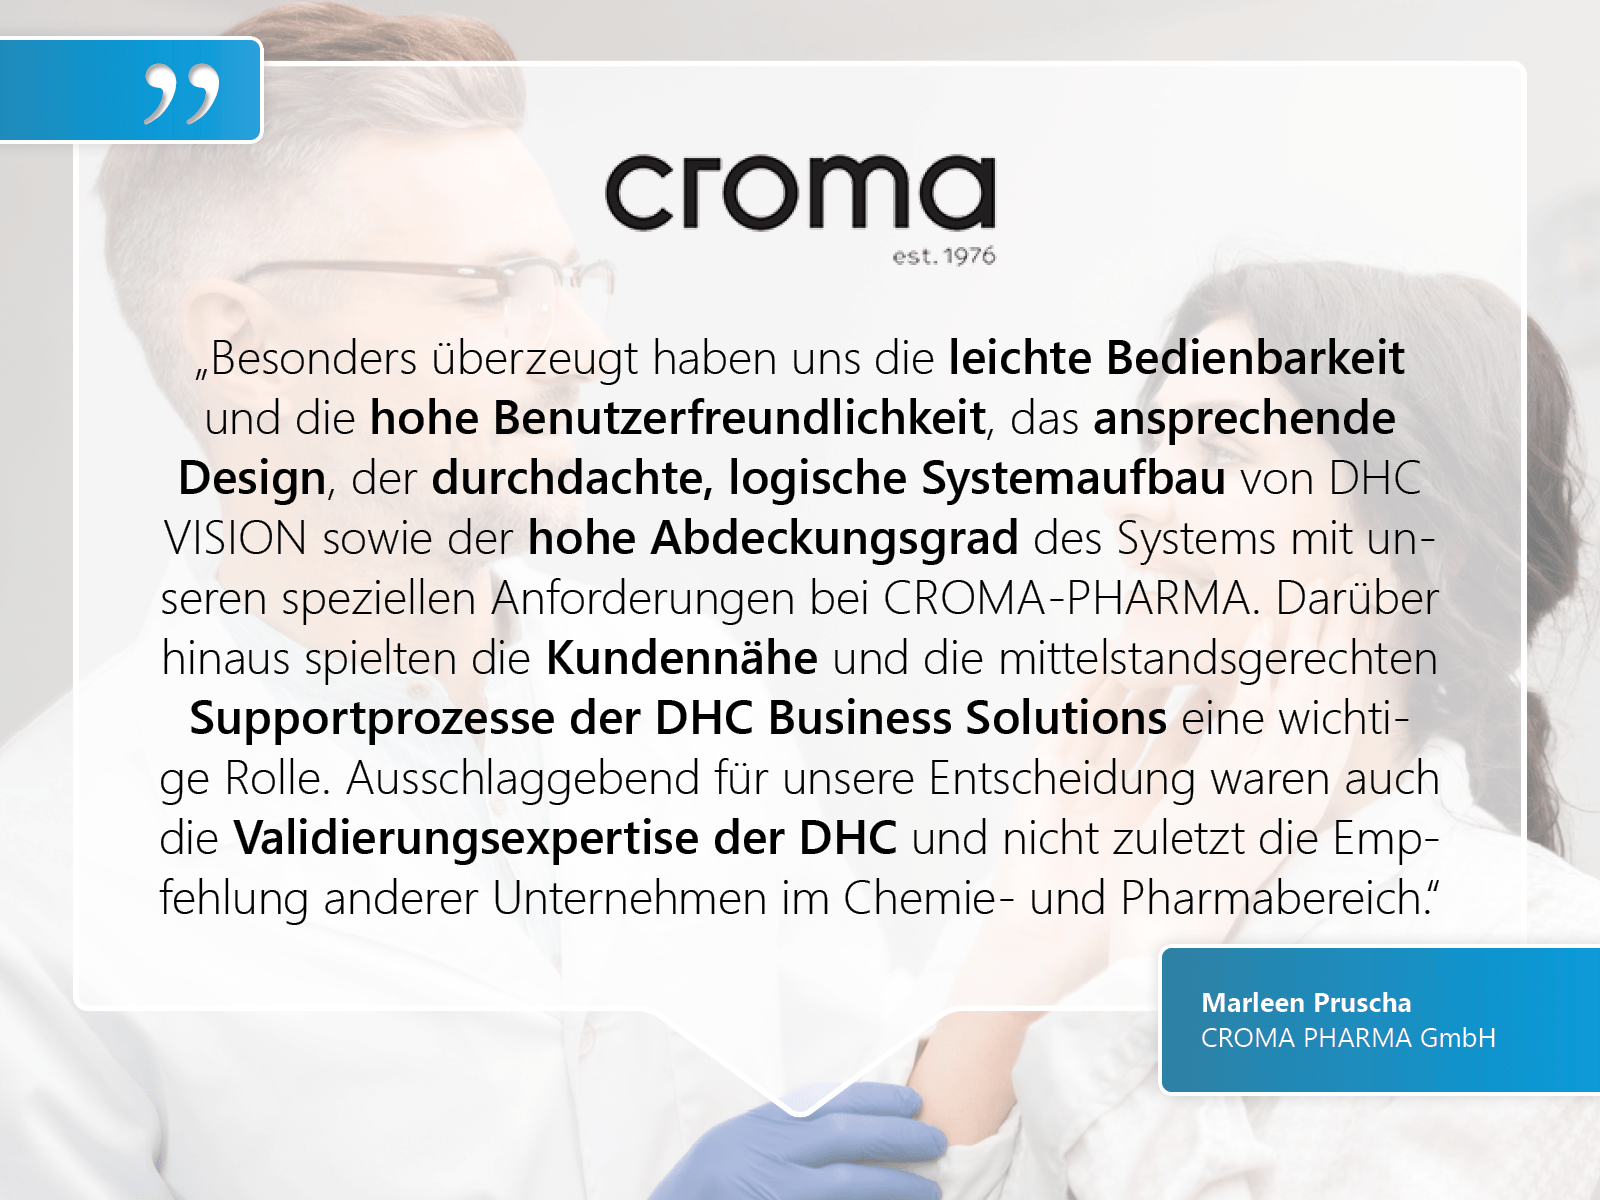 CROMA PHARMA GmbH: „Besonders überzeugt haben uns die leichte Bedienbarkeit und die hohe Benutzerfreundlichkeit, das ansprechende Design, der durchdachte, logische Systemaufbau von DHC VISION sowie der hohe Abdeckungsgrad des Systems mit unseren speziellen Anforderungen bei CROMA-PHARMA. Darüber hinaus spielten die Kundennähe und die mittelstandsgerechten Supportprozesse der DHC Business Solutions eine wichtige Rolle. Ausschlaggebend für unsere Entscheidung waren auch die Validierungsexpertise der DHC und nicht zuletzt die Empfehlung anderer Unternehmen im Chemie- und Pharmabereich.“